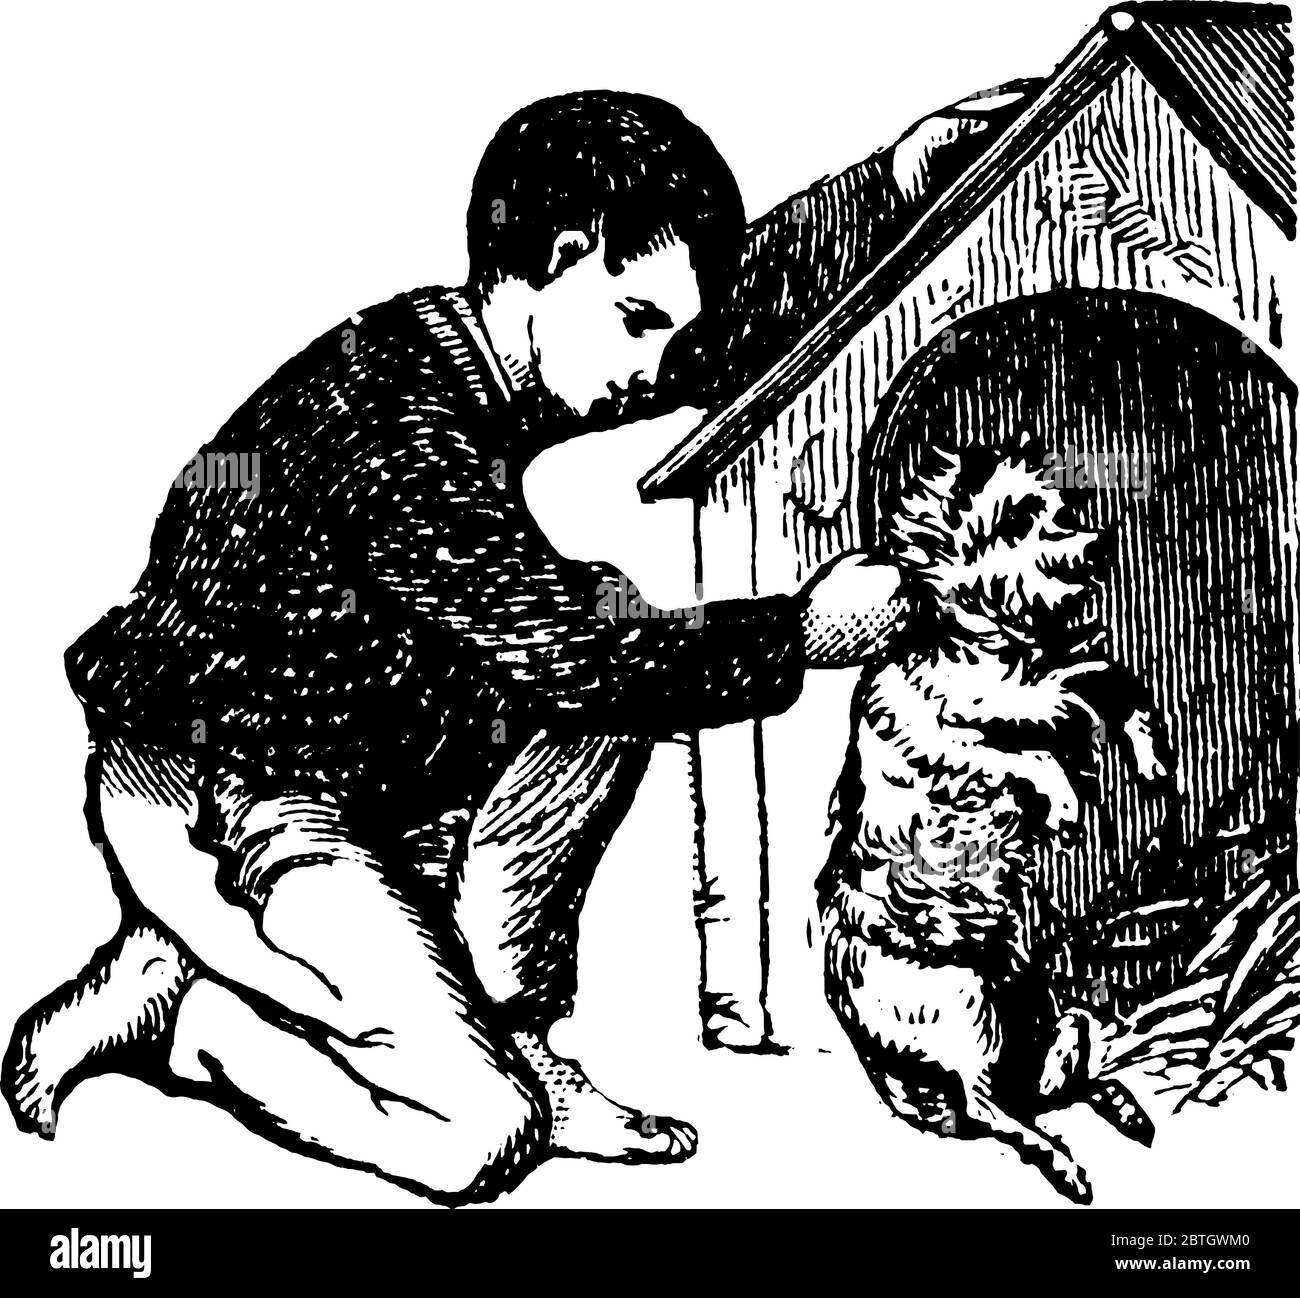 Un ragazzo giovane che gioca con il suo cane davanti all'allevamento del cane e il cane sta in piedi sui suoi due piedi, disegno di linea vintage o illustrazione di incisione. Illustrazione Vettoriale